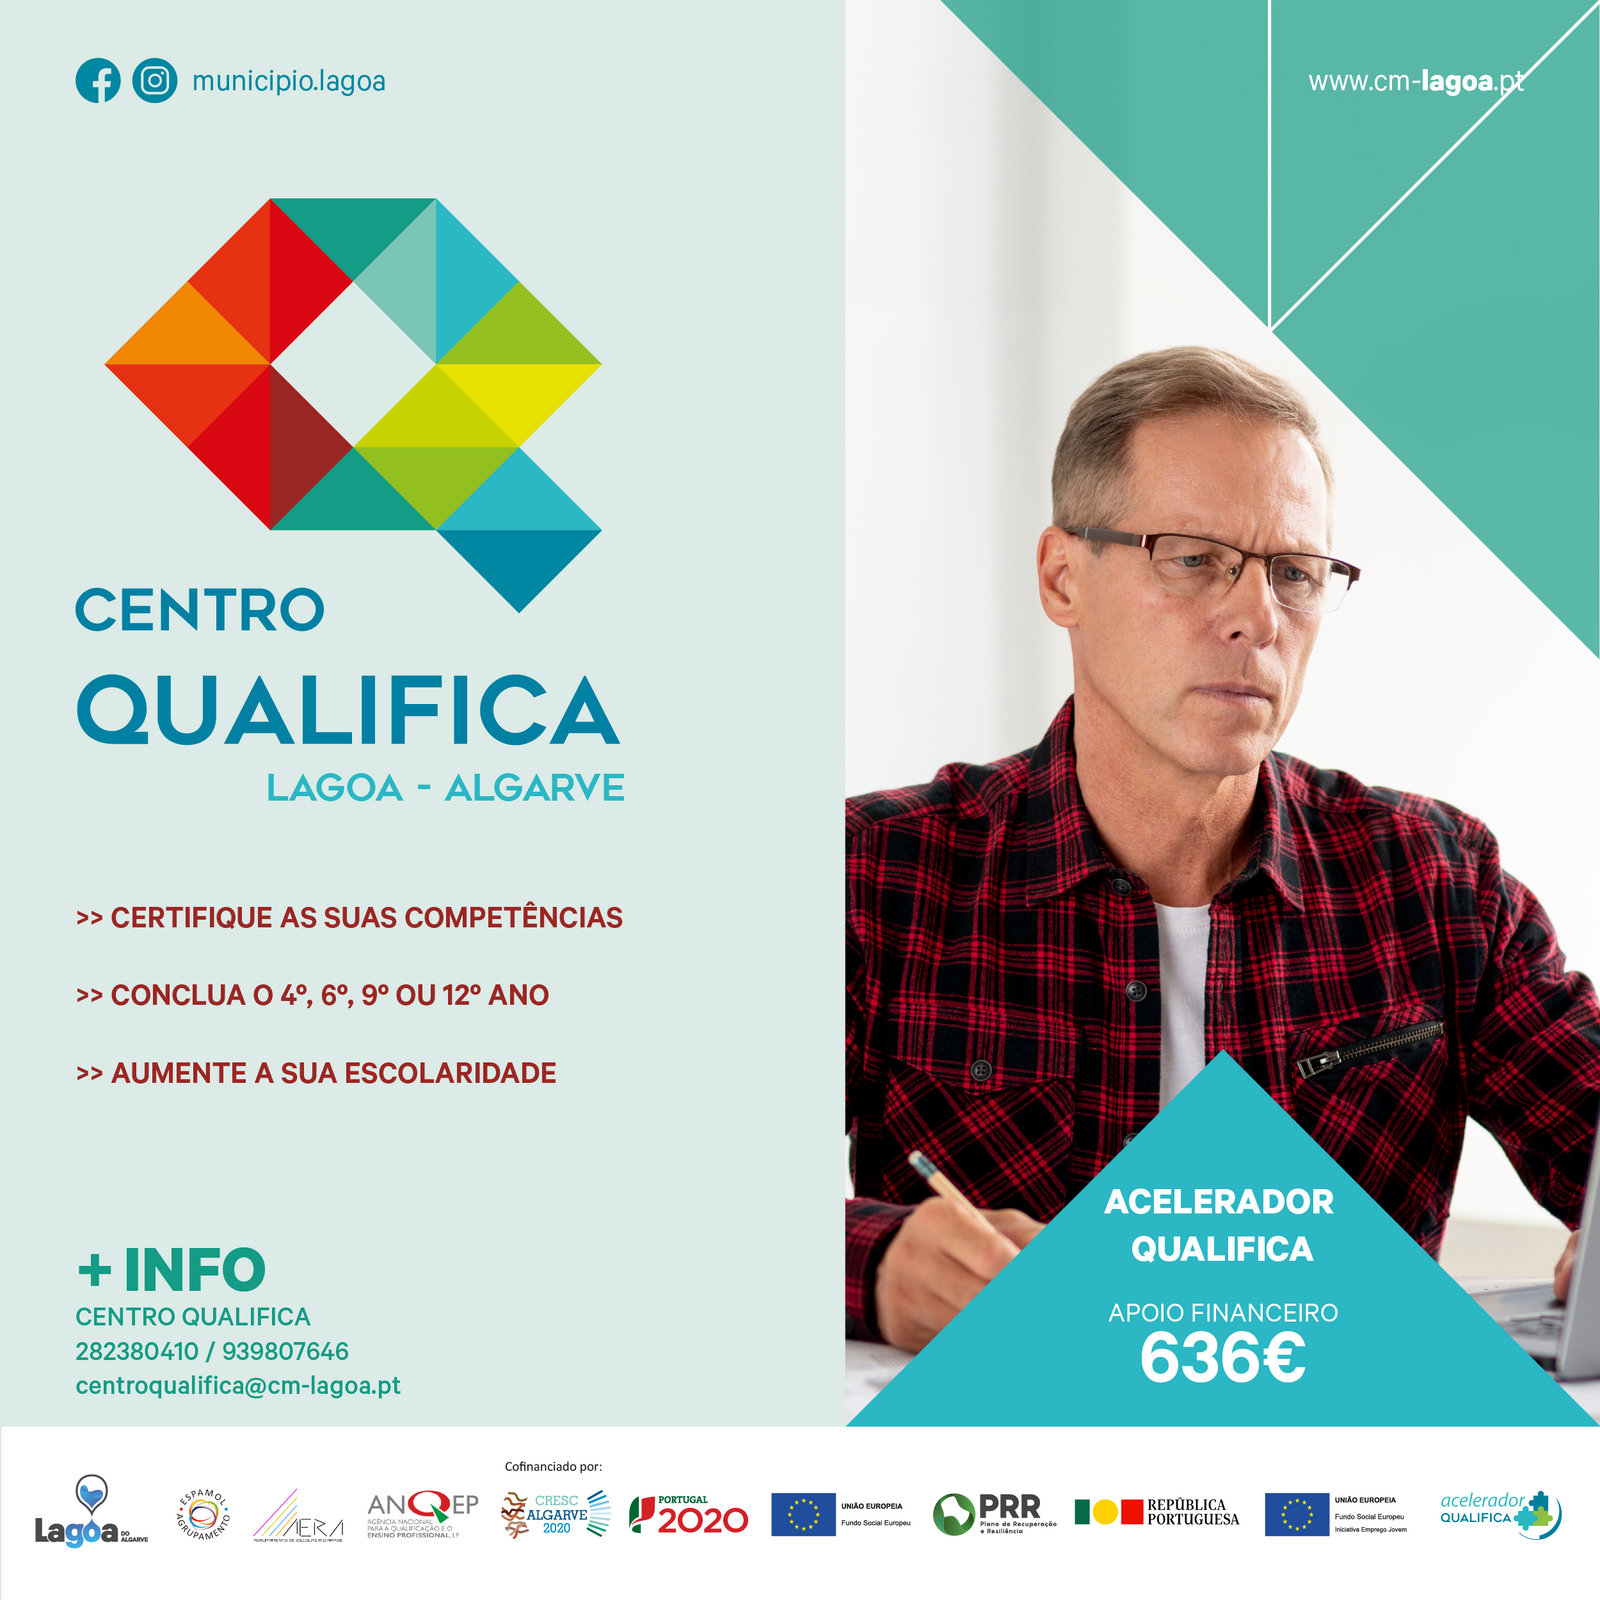 Centro Qualifica Lagoa | Certificação de competências